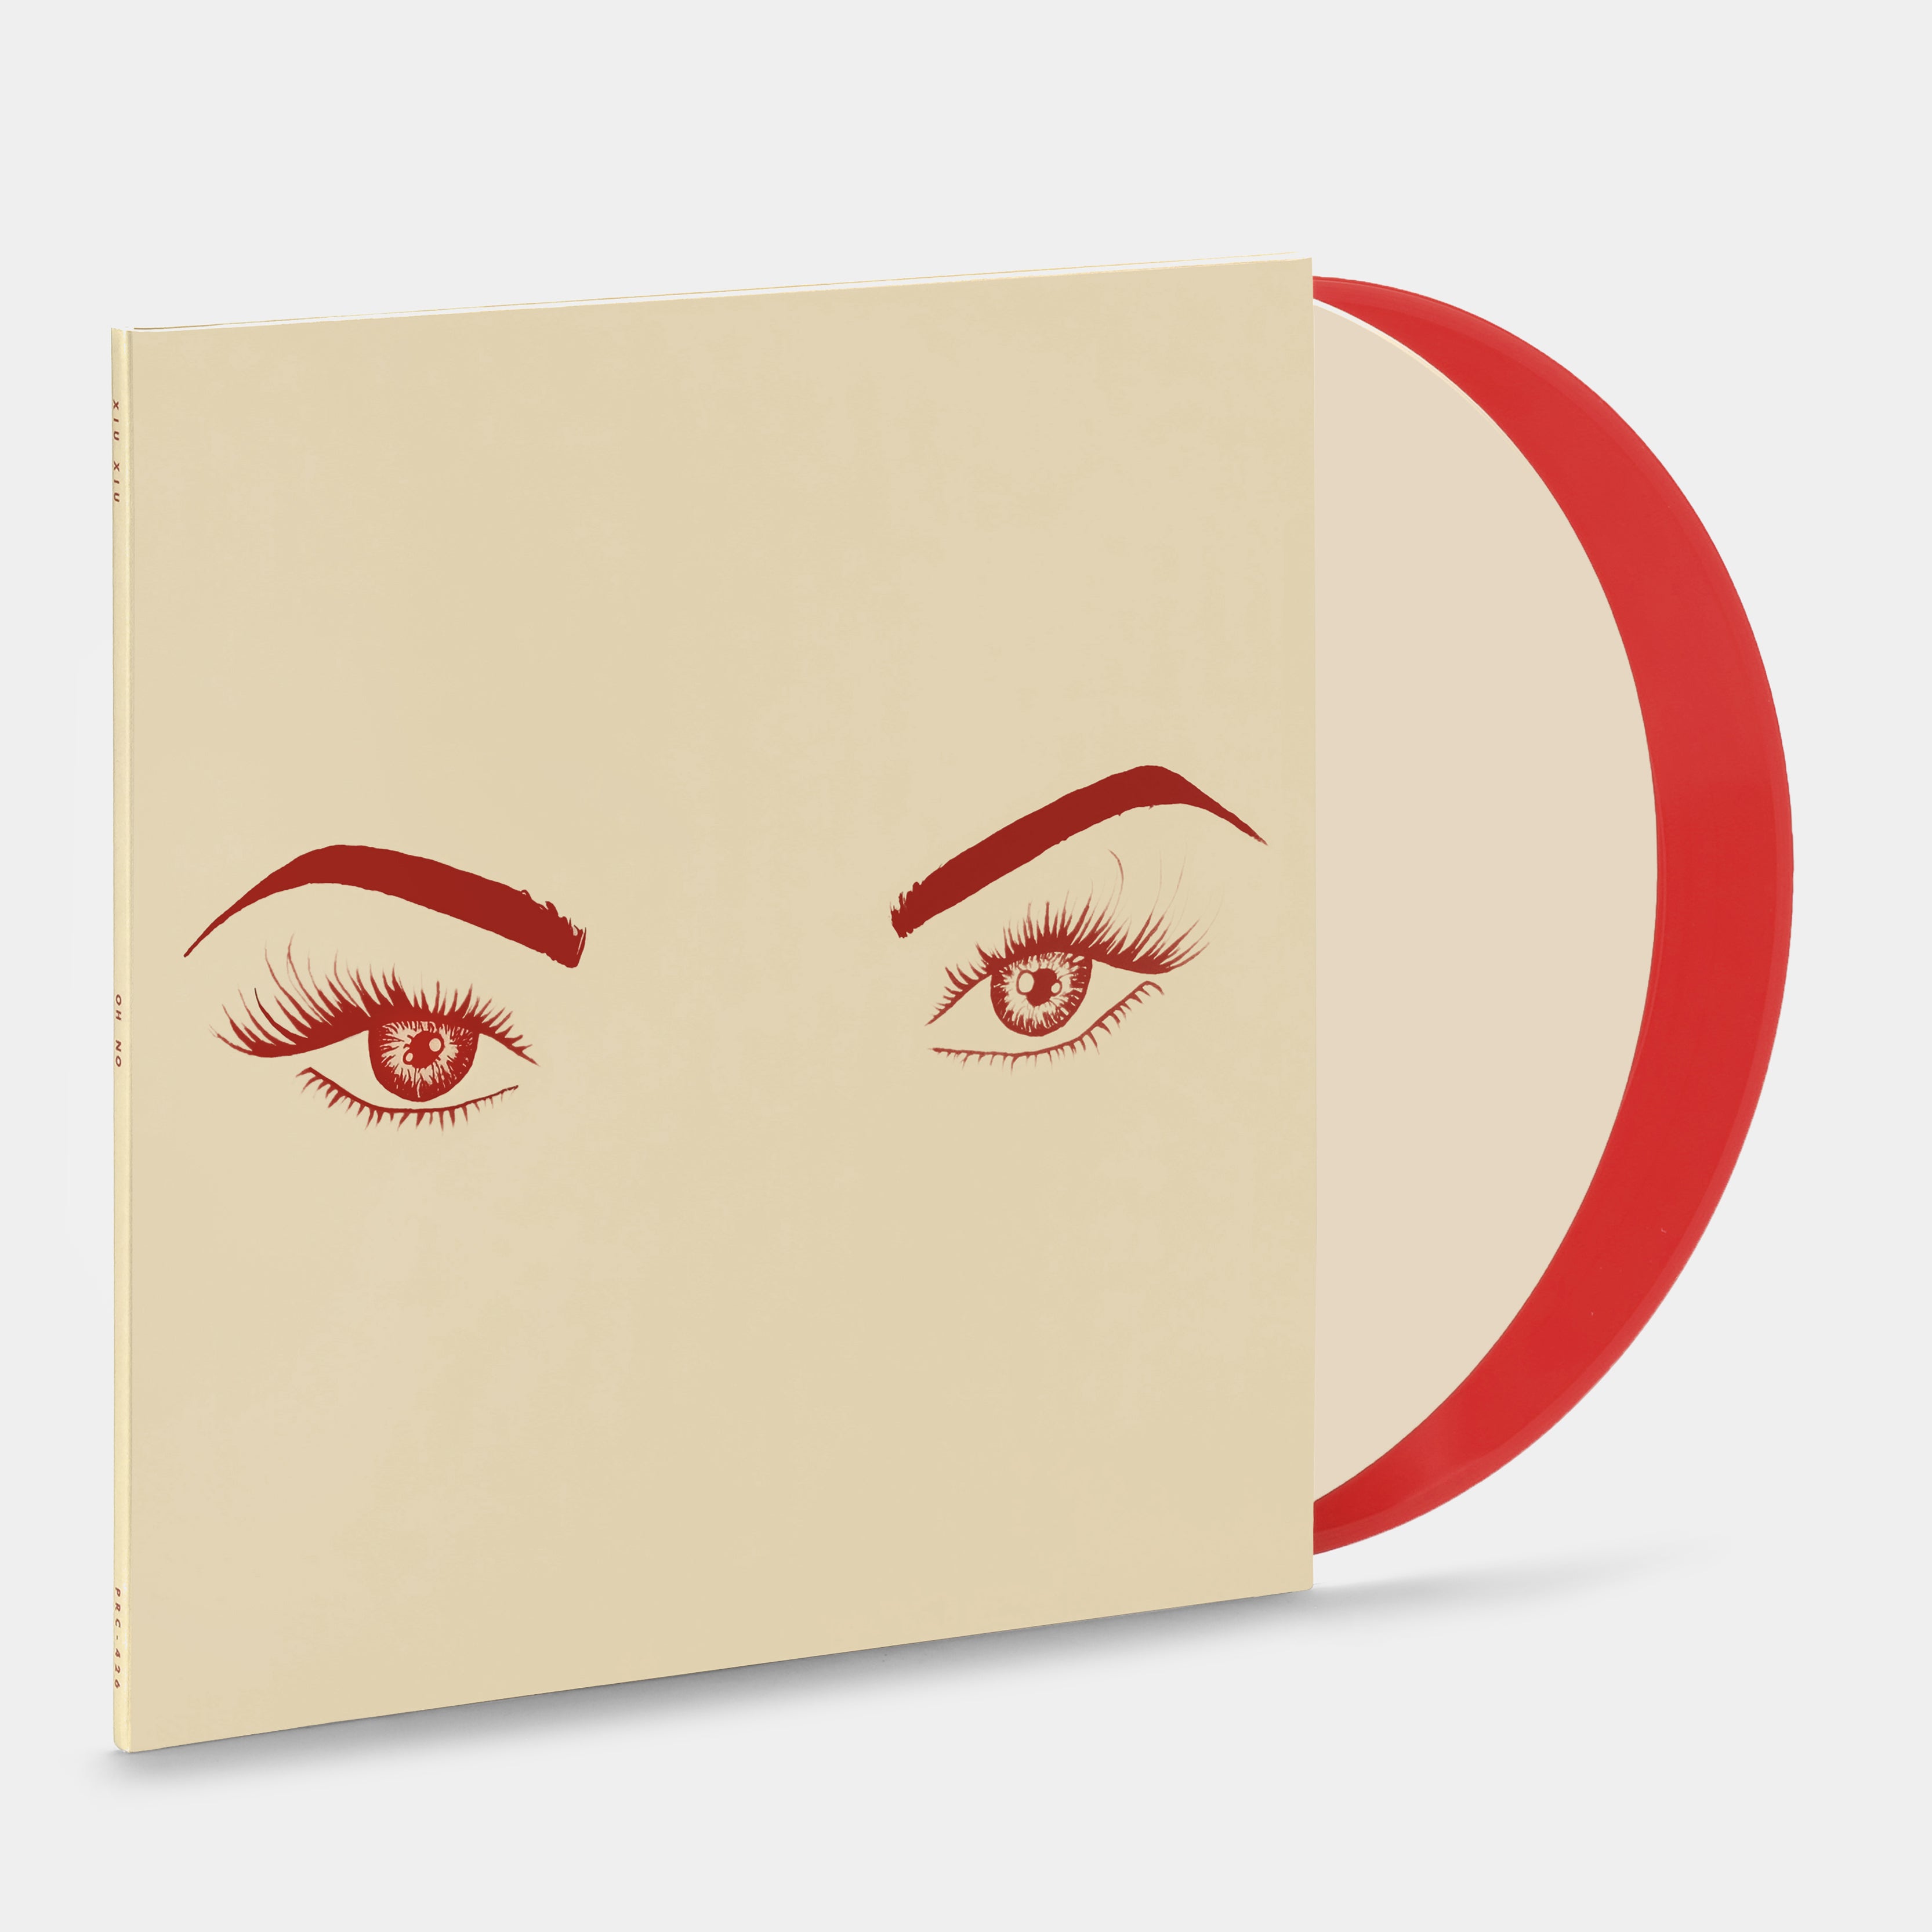 Xiu Xiu - OH NO 2xLP Scarlet & Cream Vinyl Record